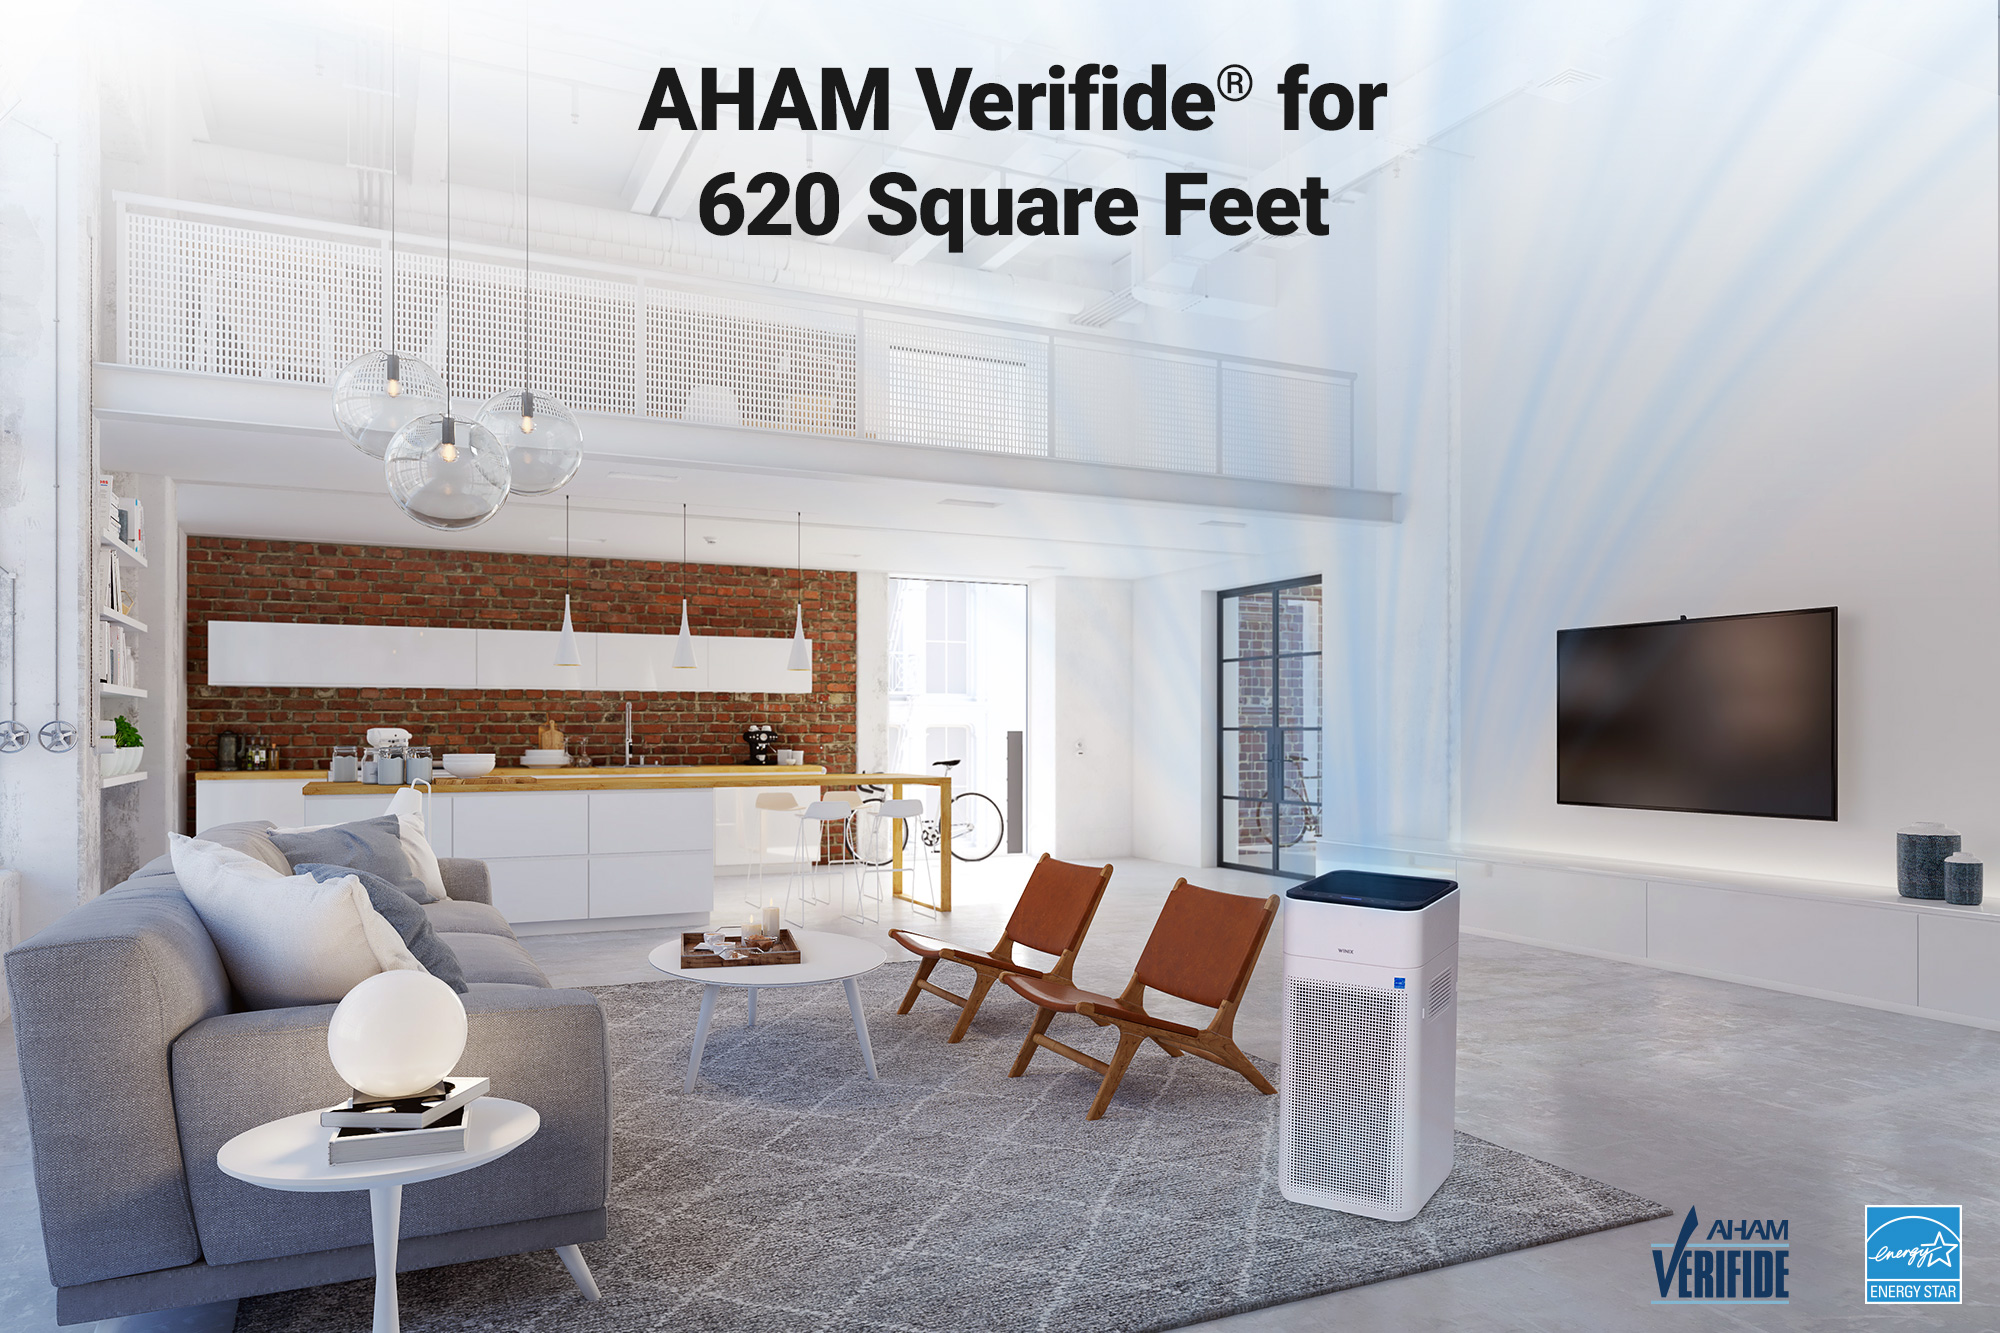 XLC Air Purifier AHAM Verifide 620 square feet